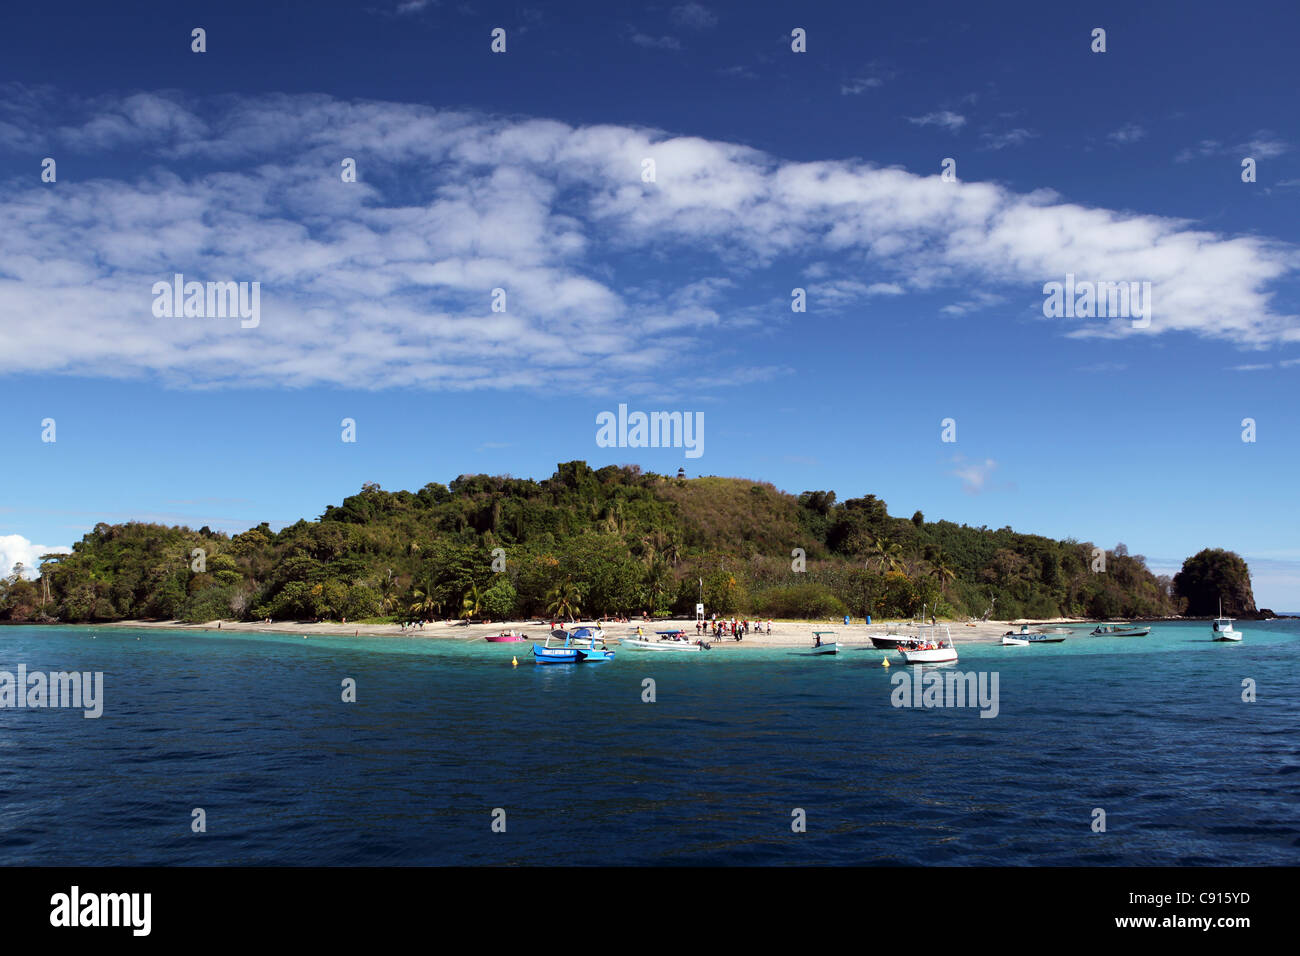 La plongée avec tuba et plongée paradis tropical de Tany Kely, près de l'île de Nosy Be, avec bateaux ancrés sur le turquoise de l'eau claire. Banque D'Images